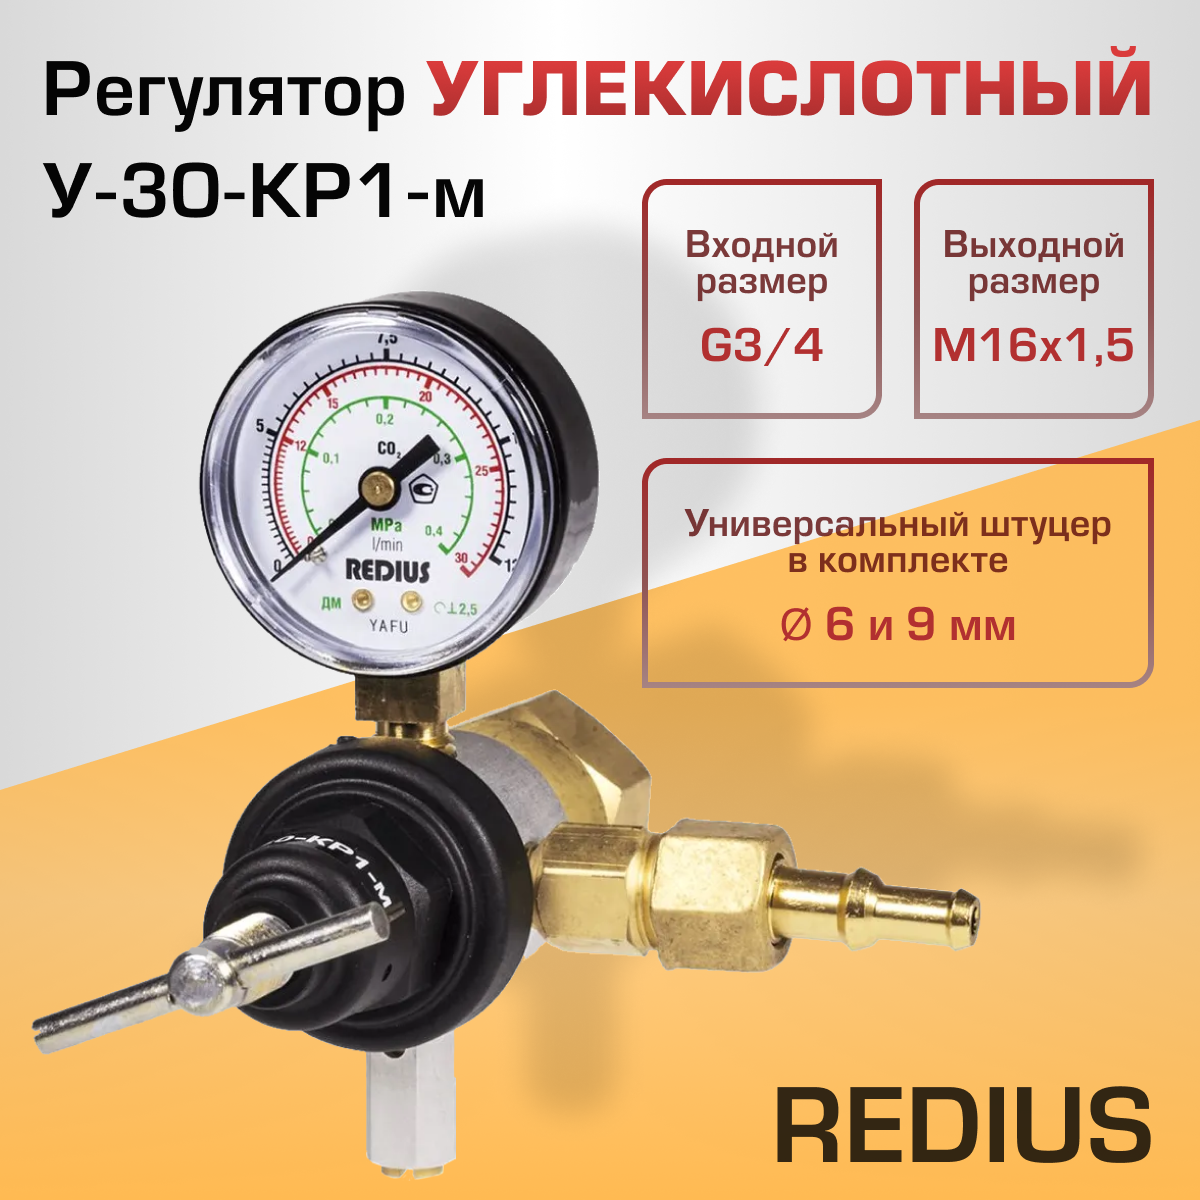 Регулятор углекислотный Redius У-30-КР1-м